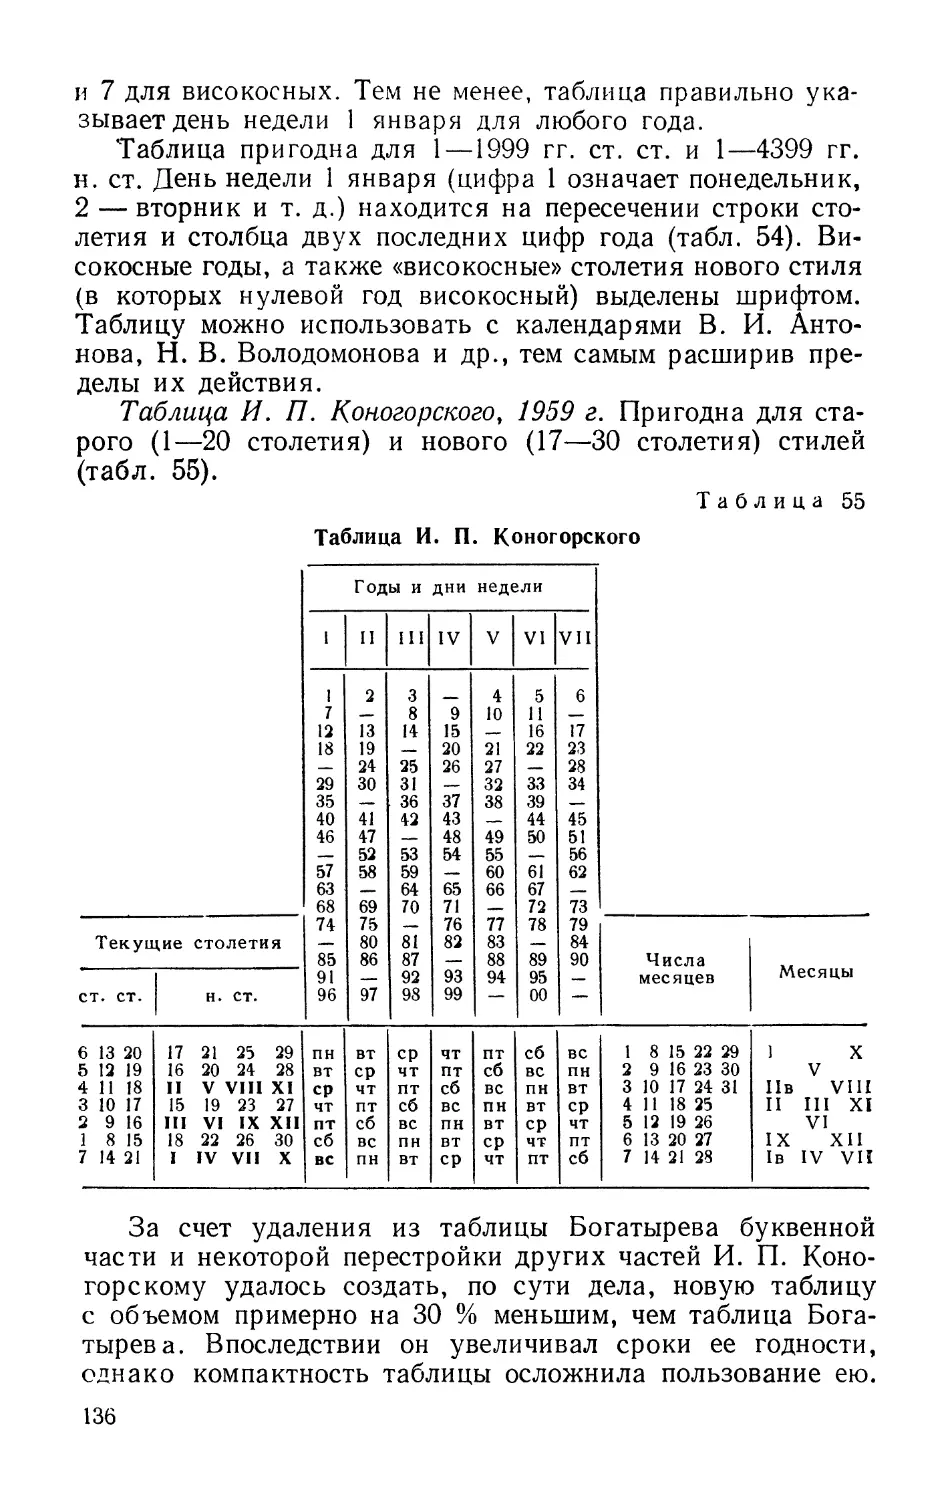 Таблица И. П. Коногорского, 1959 г.